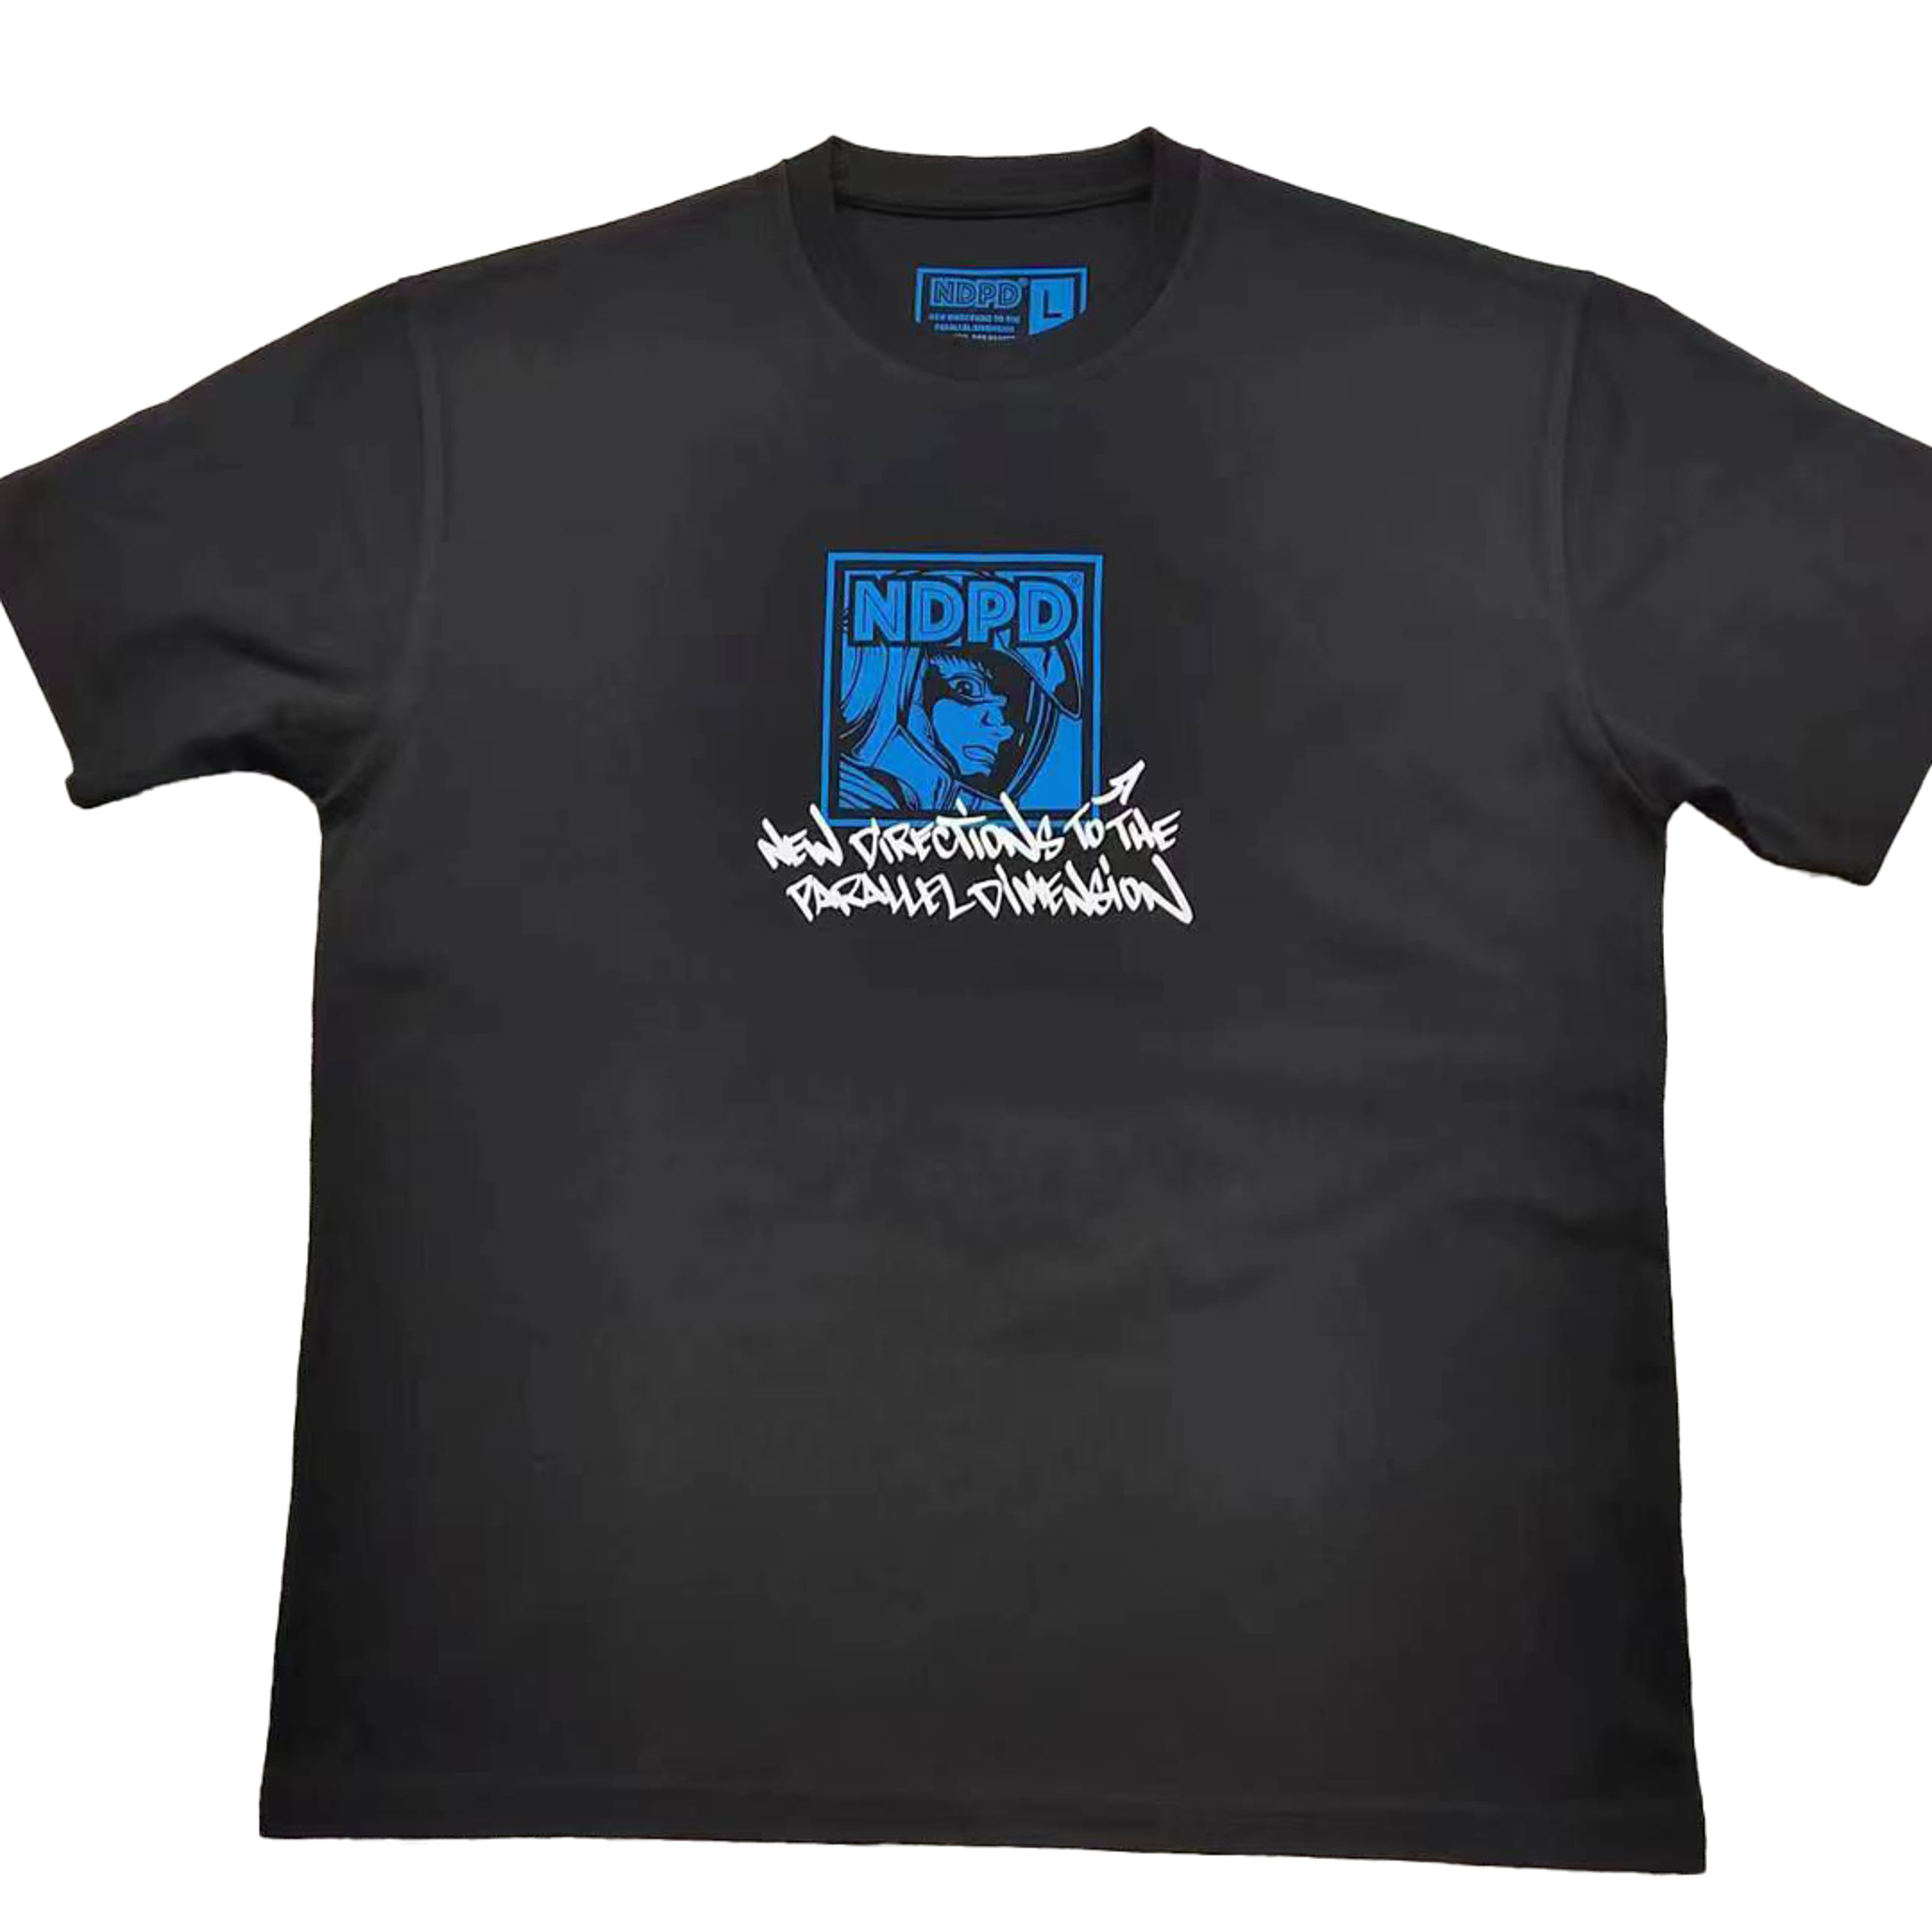 STASH x JAHAN NDPD Launch Event T-Shirt - Black